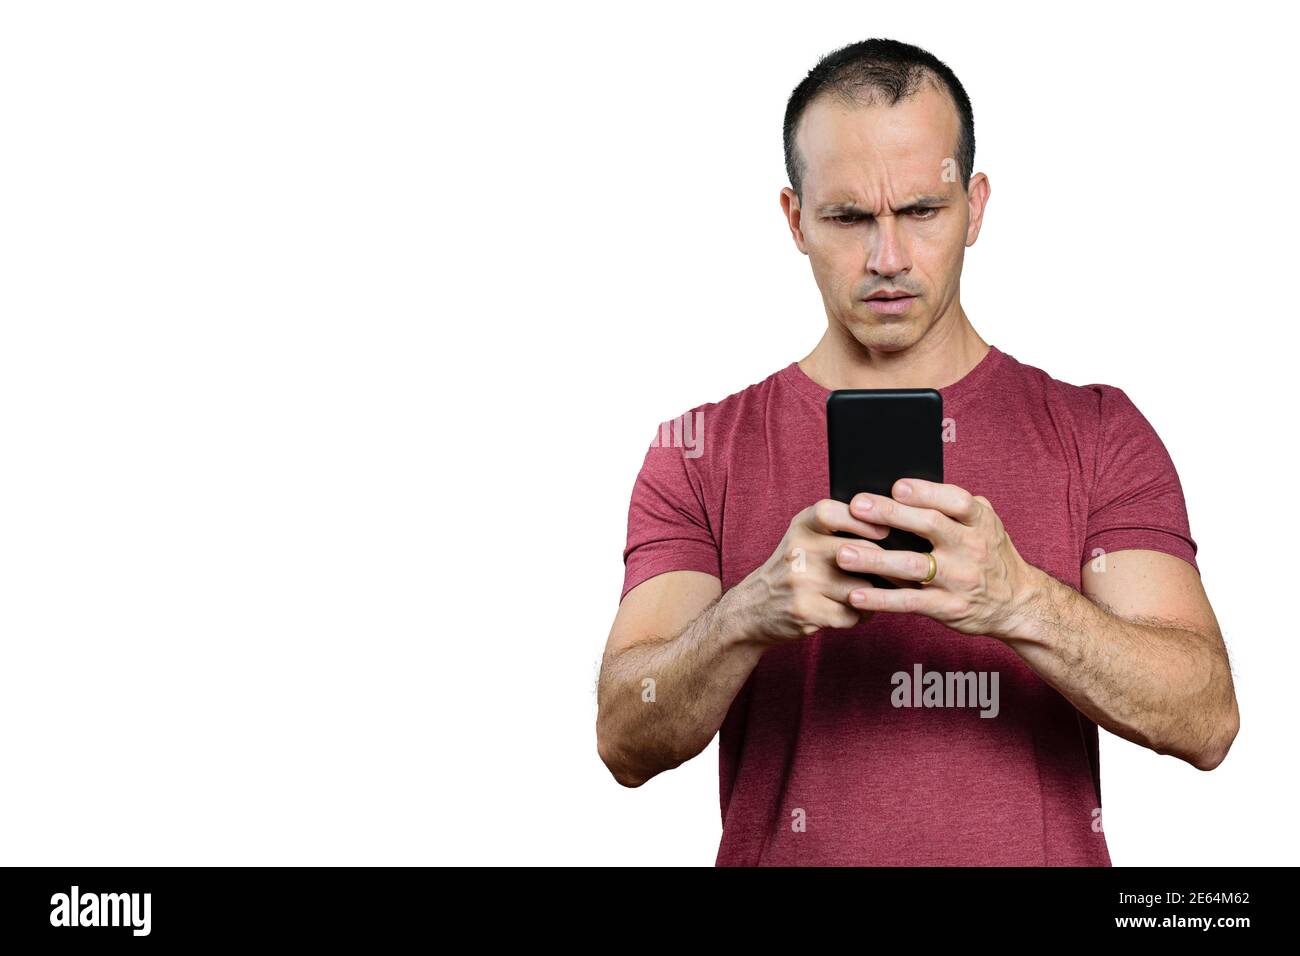 Homme brésilien mature regardant son smartphone et faisant un visage désapprouvant. Banque D'Images